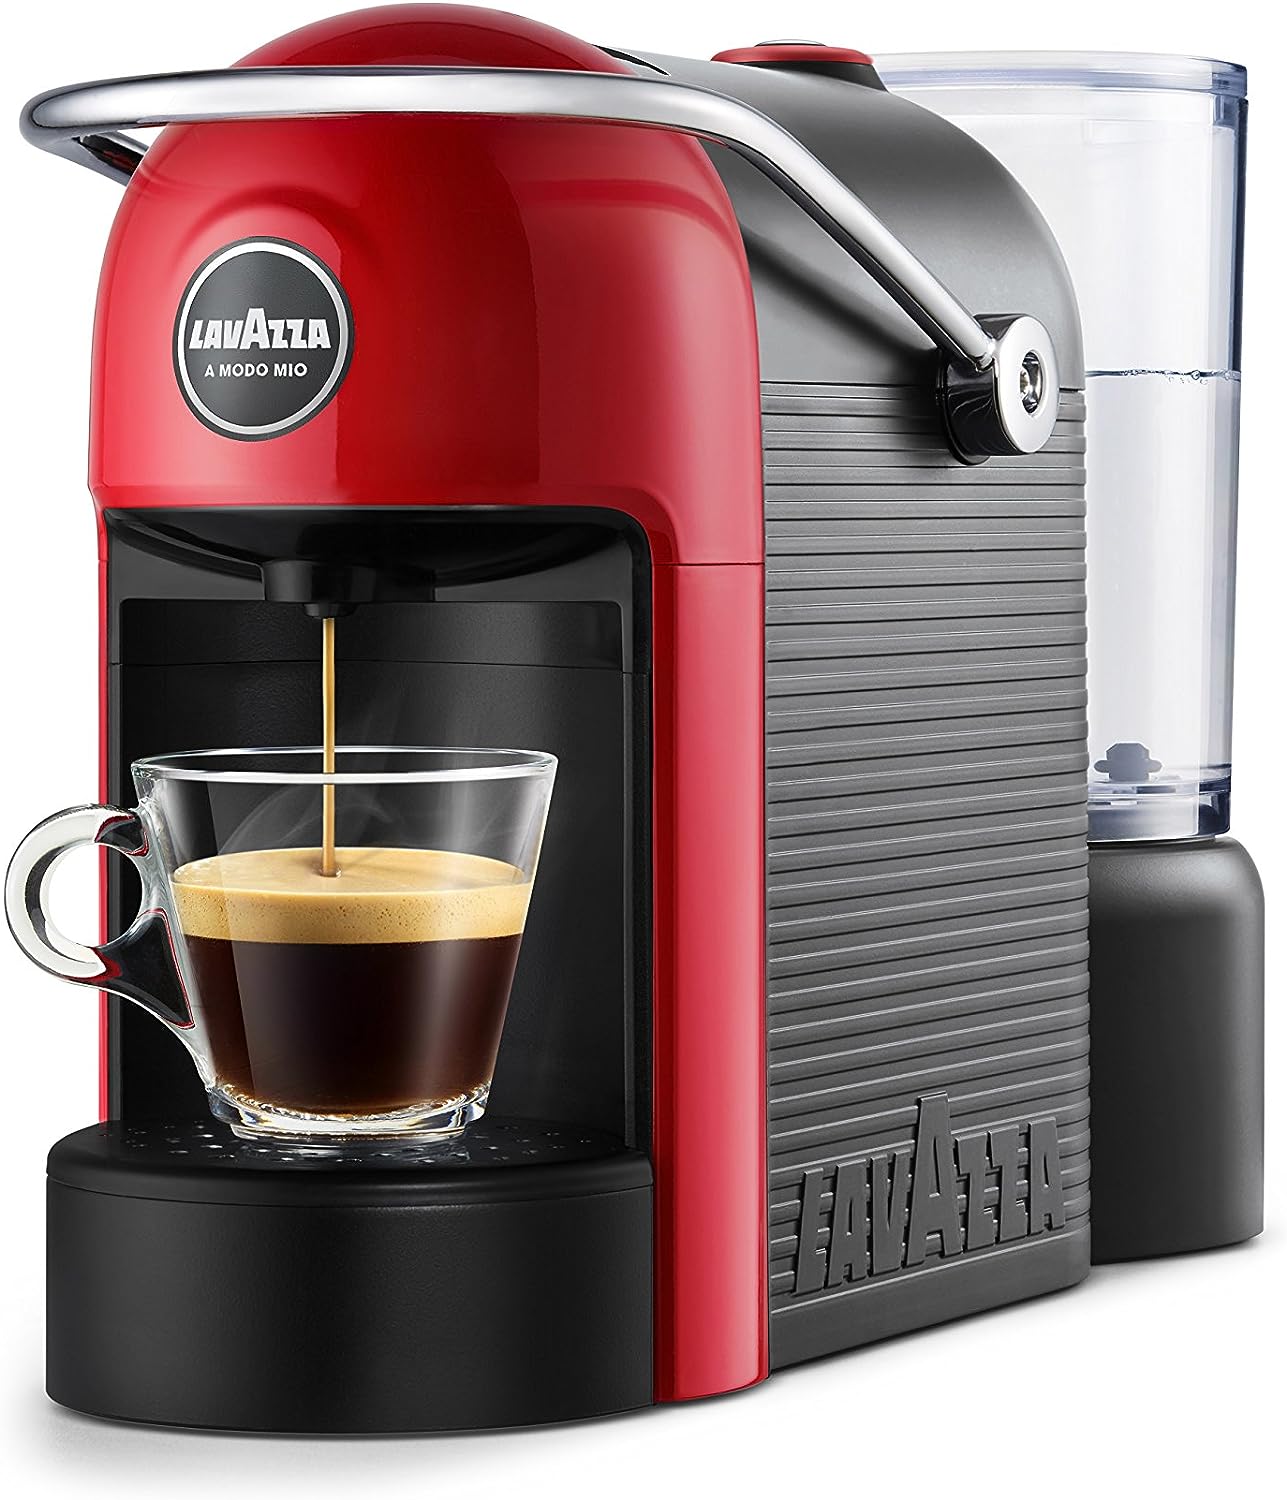 Macchina caffè: Nespresso, Lavazza, con capsule, cialde o automatiche? Come sceglierla